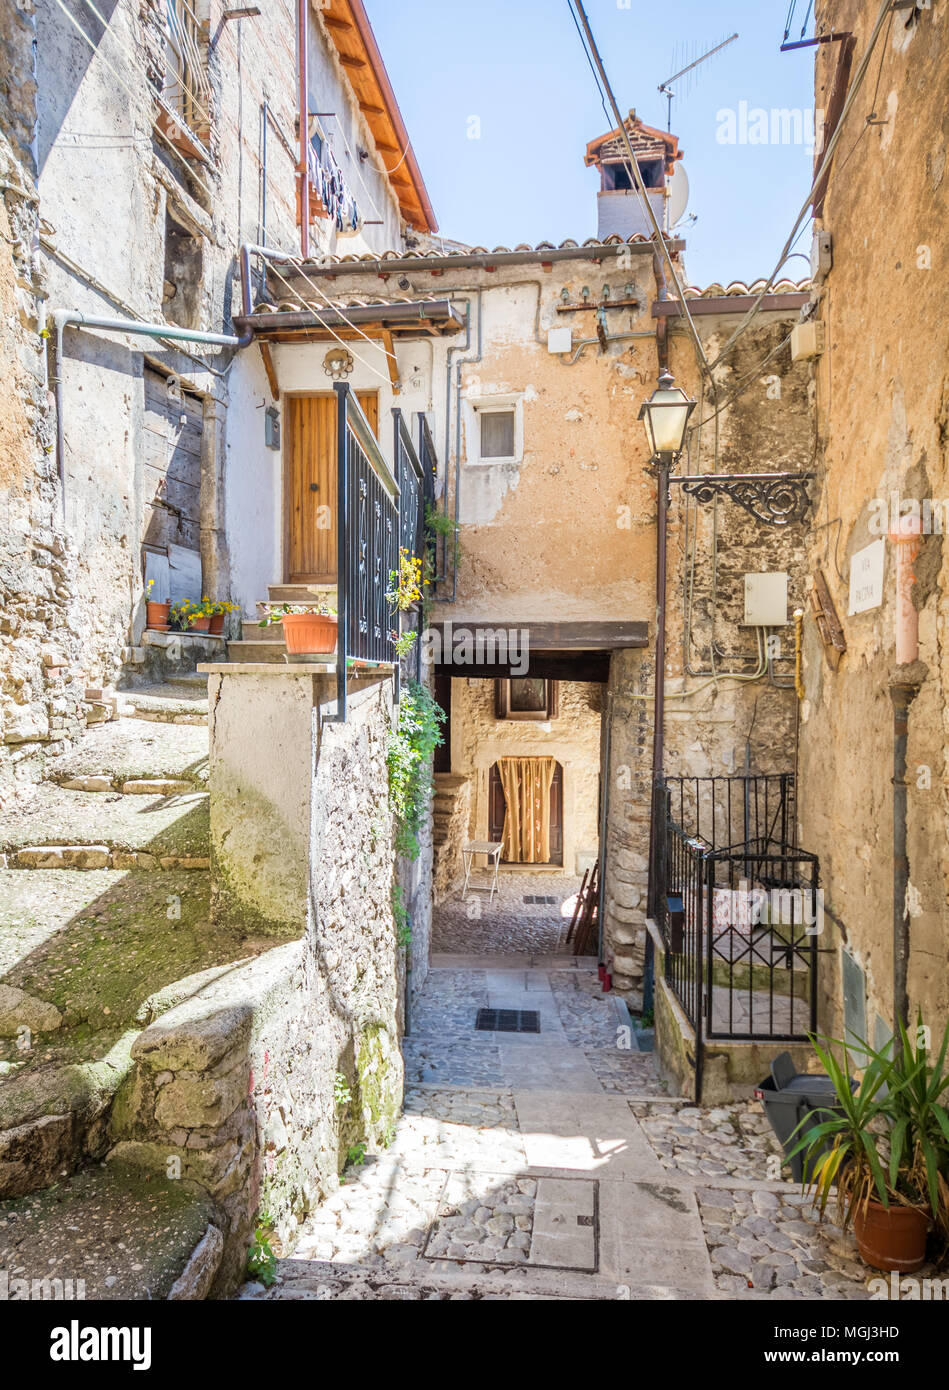 Malerische Anblick in Poggio Moiano, ländlichen Dorf in der Provinz Rieti in der italienischen Region Latium. Stockfoto